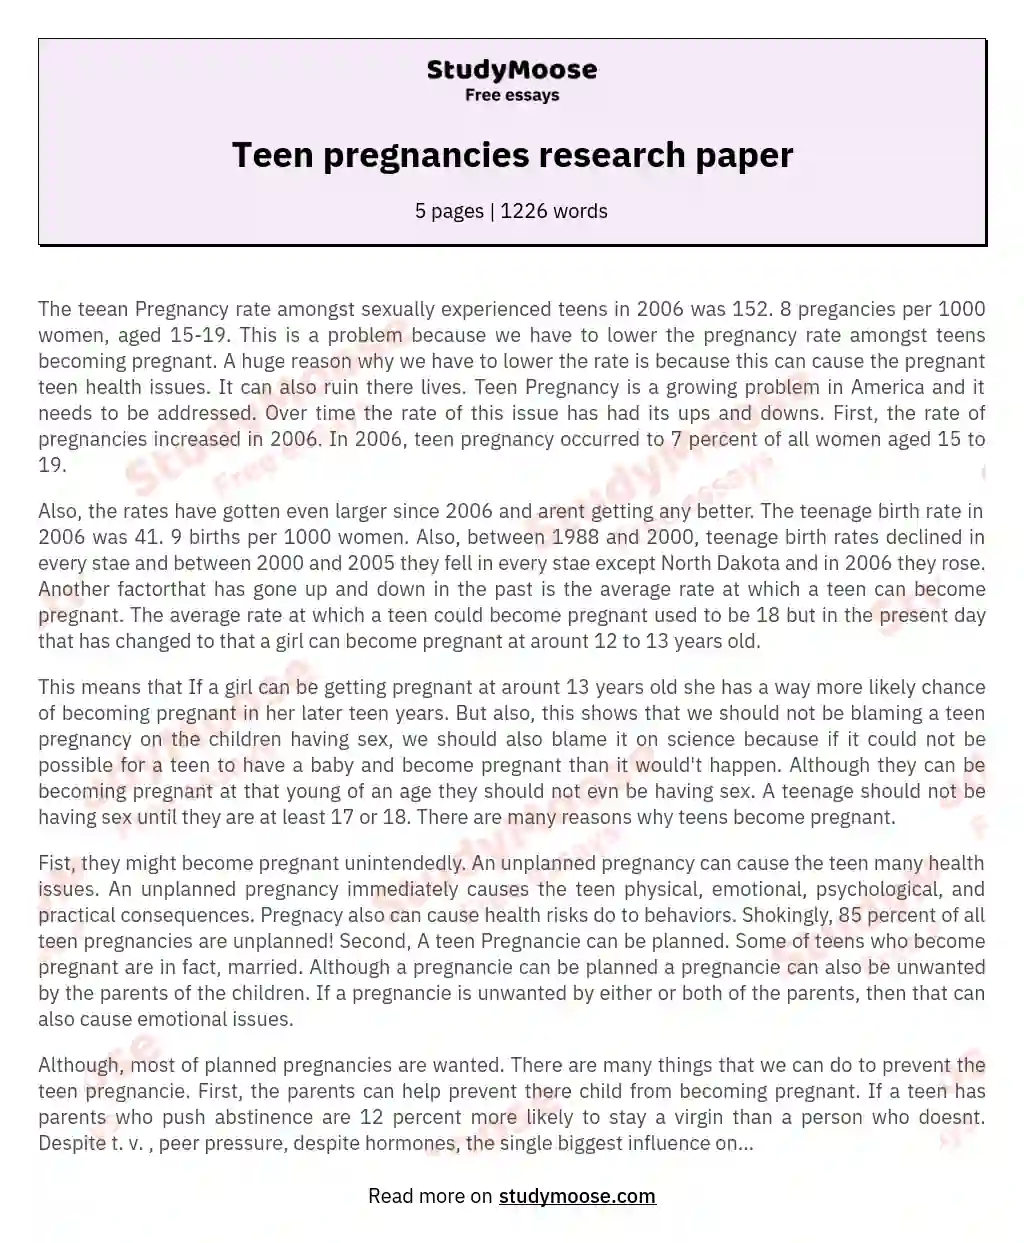 Teen pregnancies research paper essay